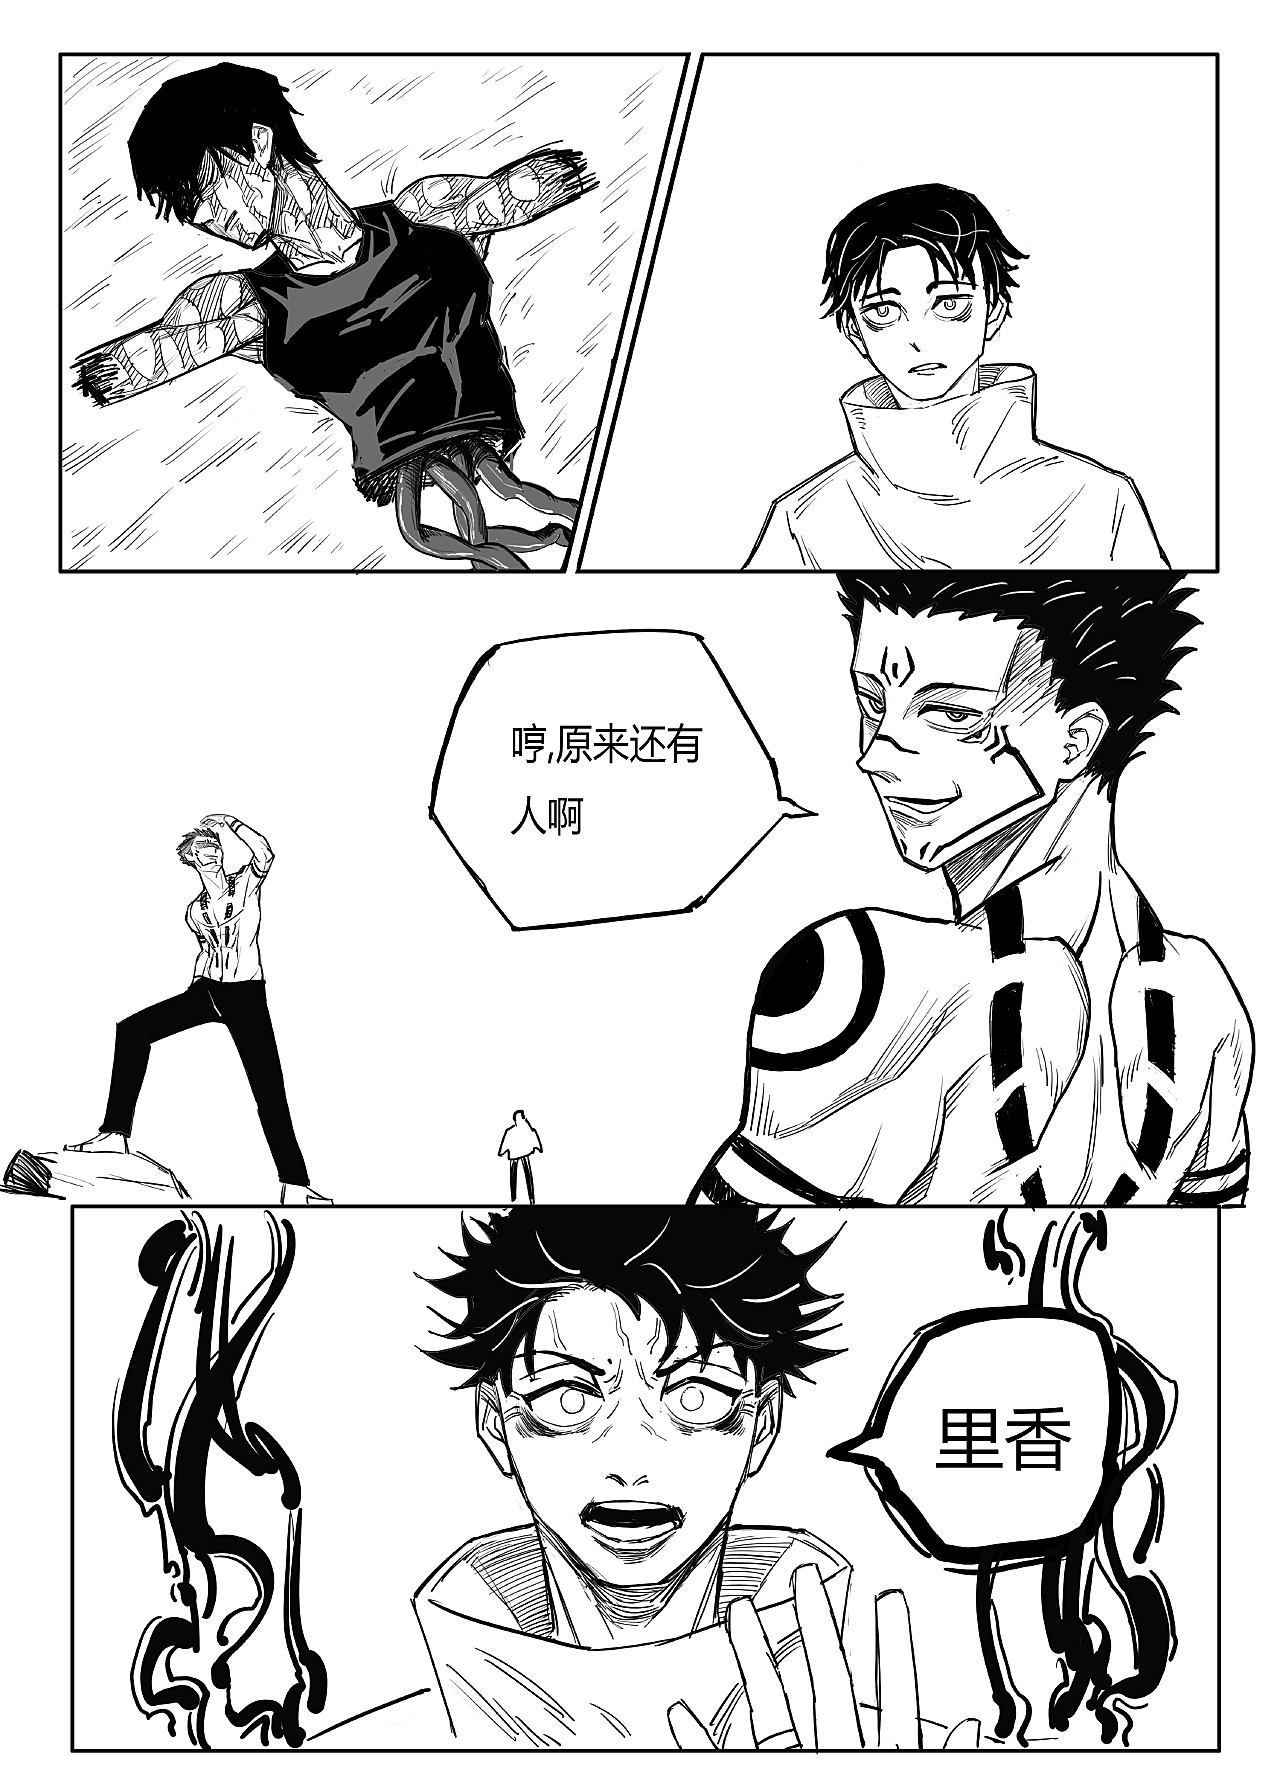 《咒术回战》简体中文漫画1-5卷将于 9月 发售。_来自网易大神圈子_BB姬Studio